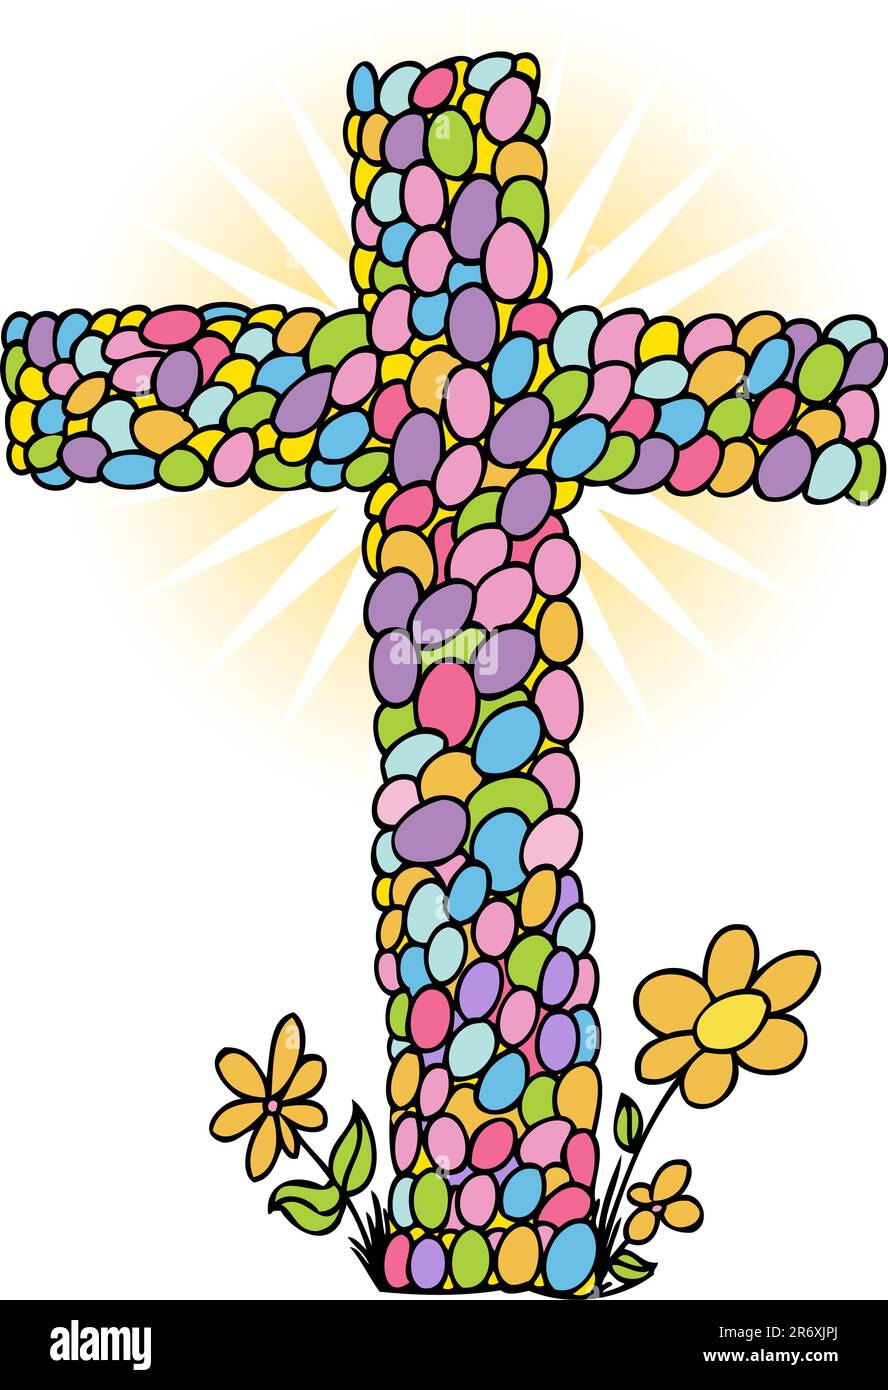 Cross in shape of eggs for Easter Sunday. Stock Vector